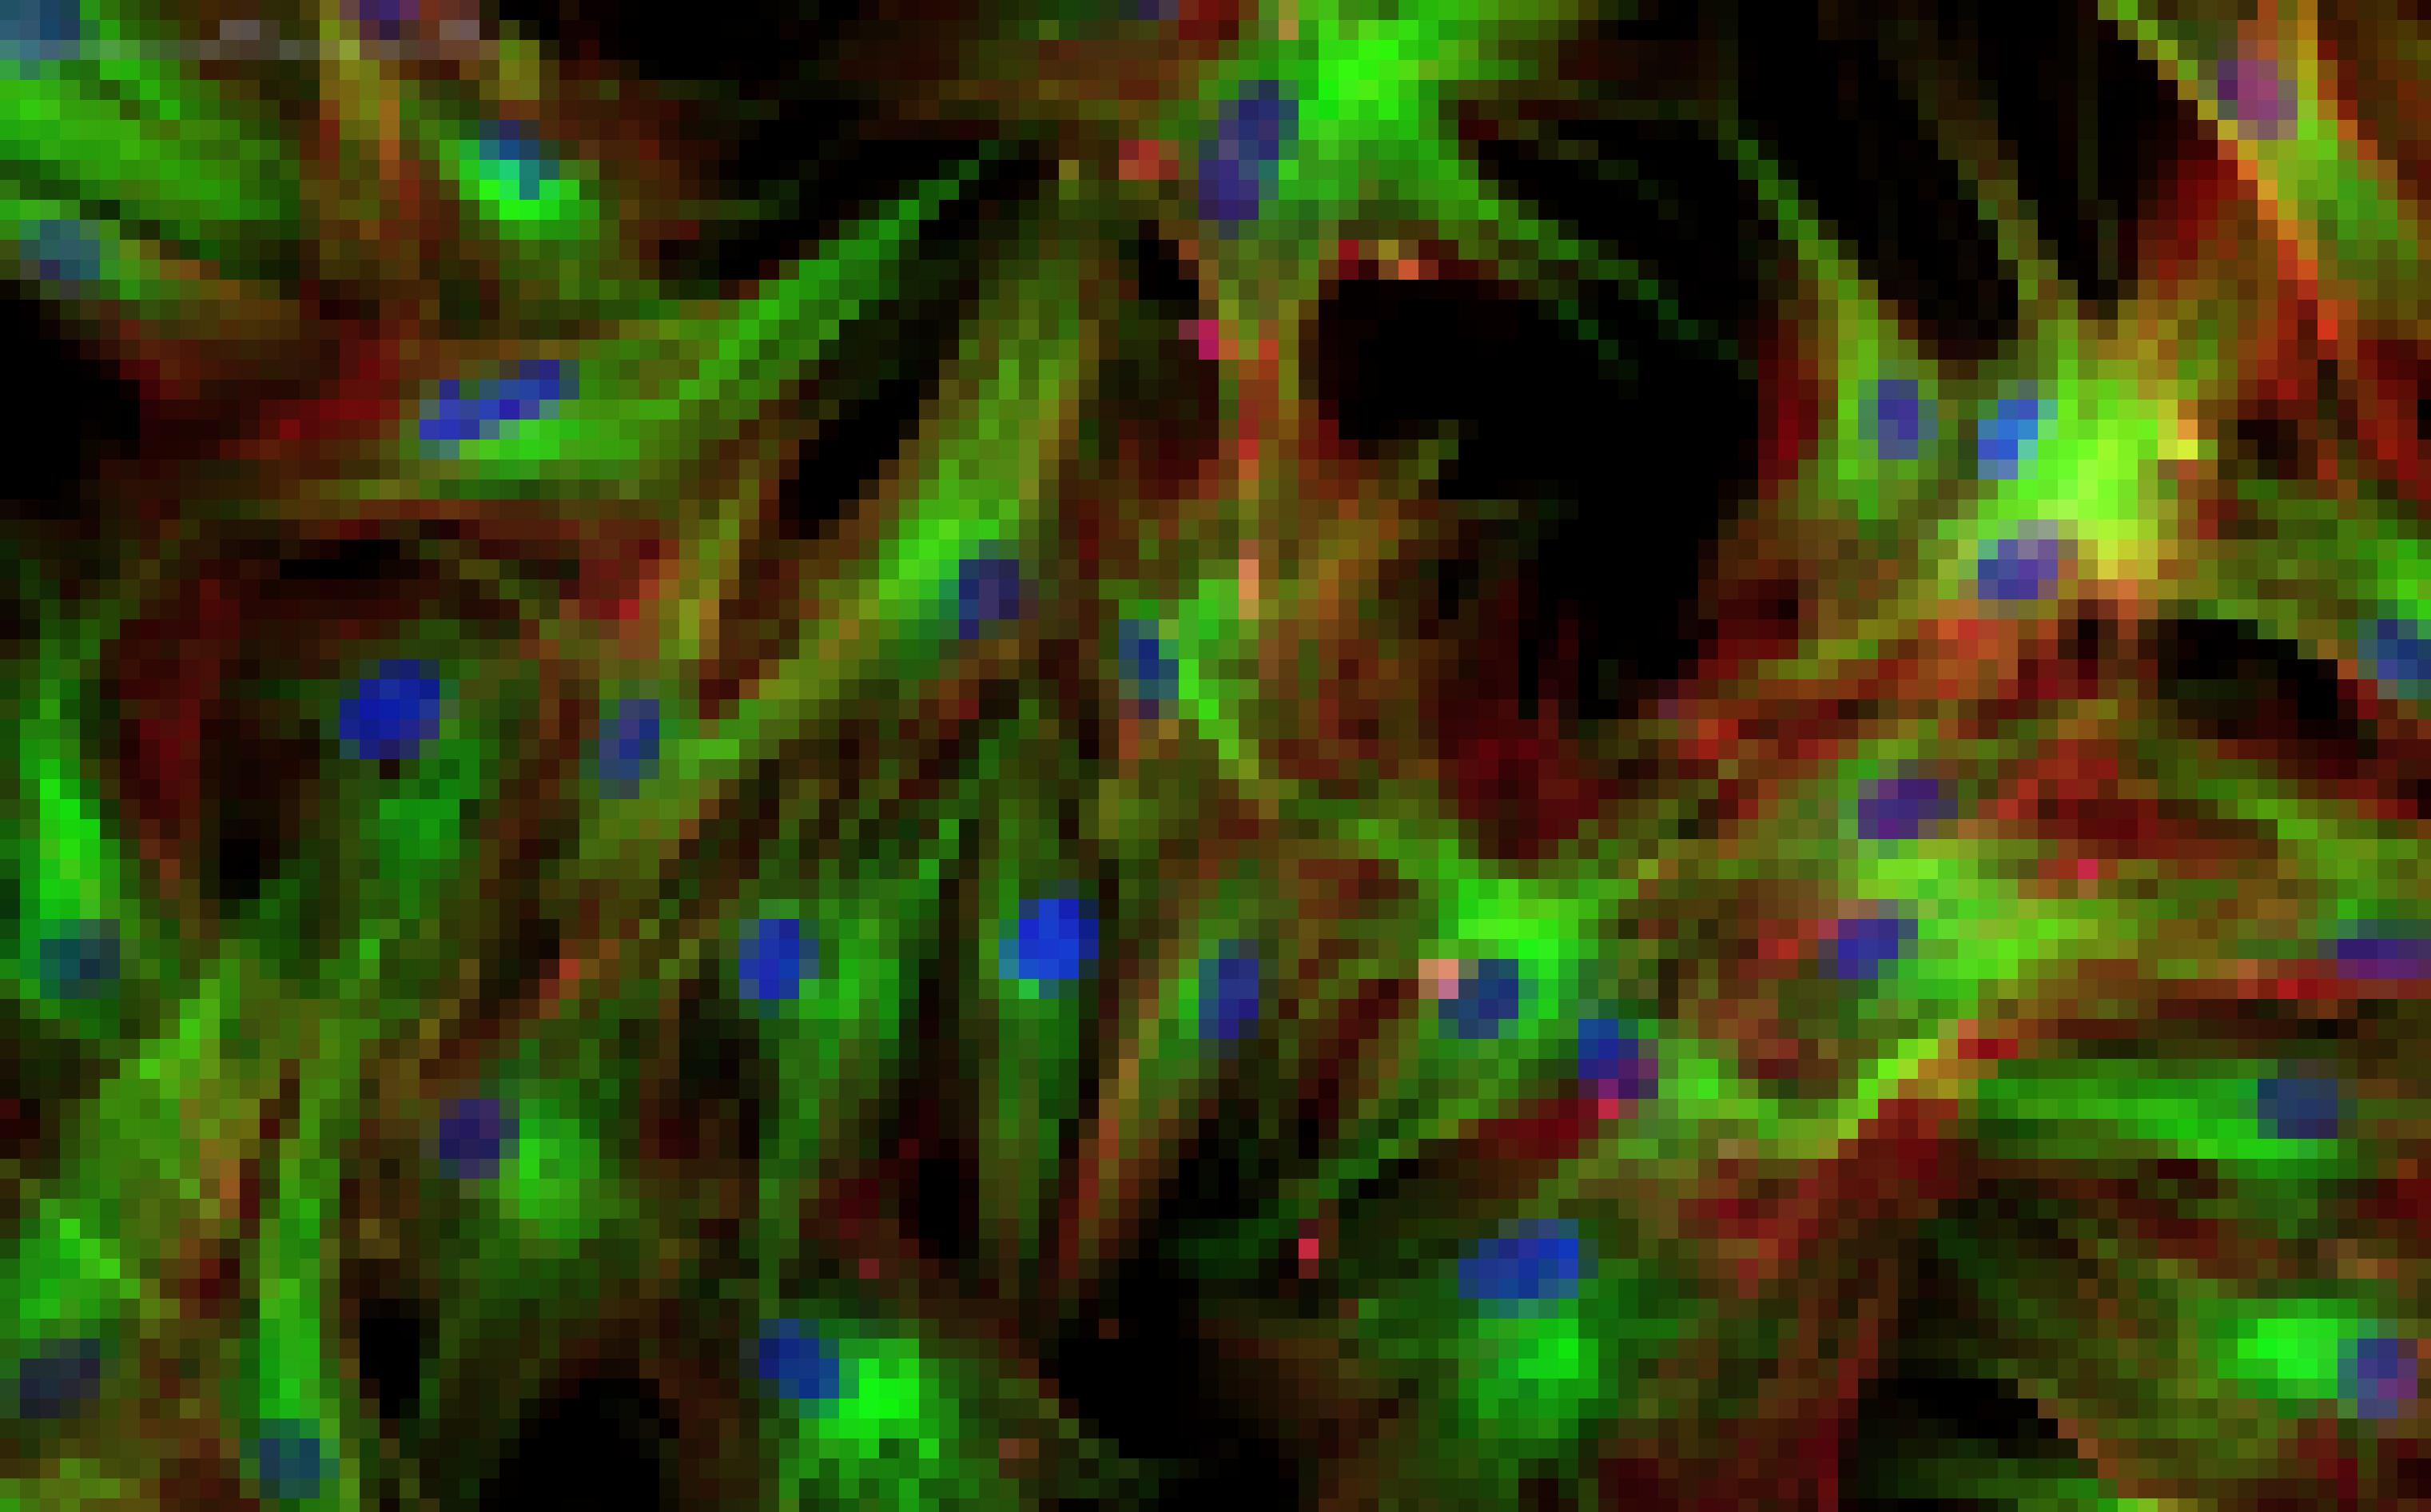 Grell blau, grün und rot schillernde spindelförmige Zellen bilden ein Netzwerk.